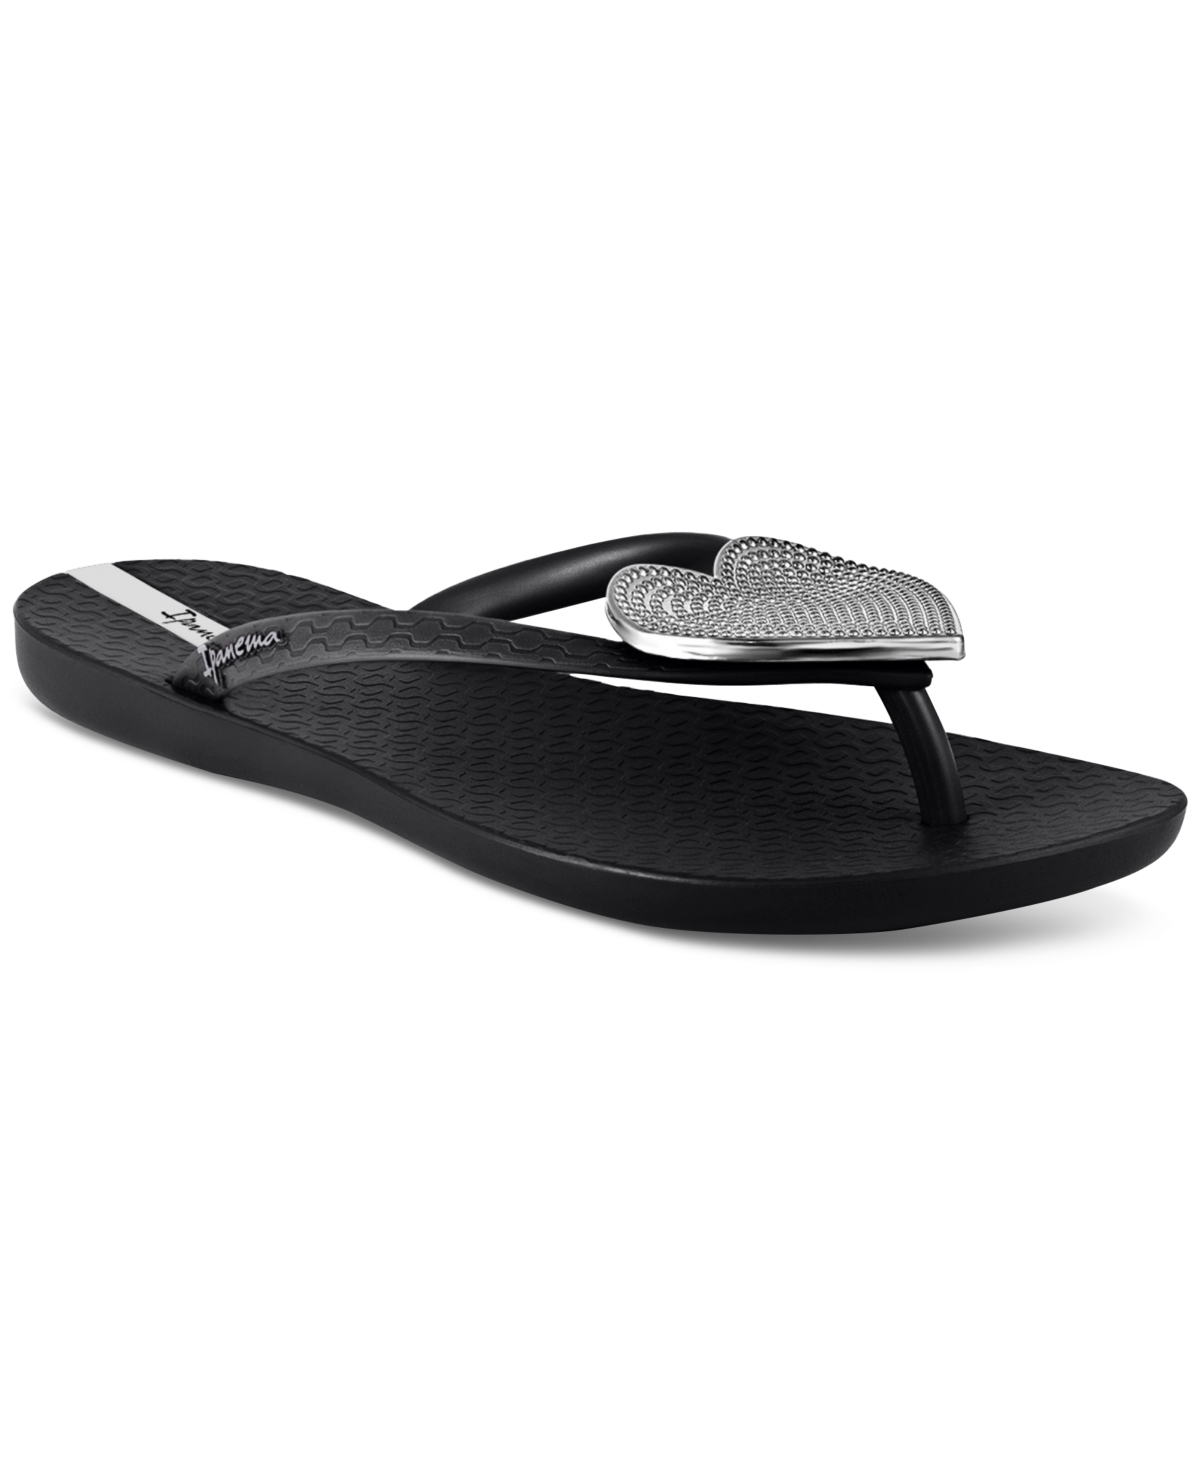 Women's Wave Heart Sparkle Flip-flop Sandals - Black, Silver